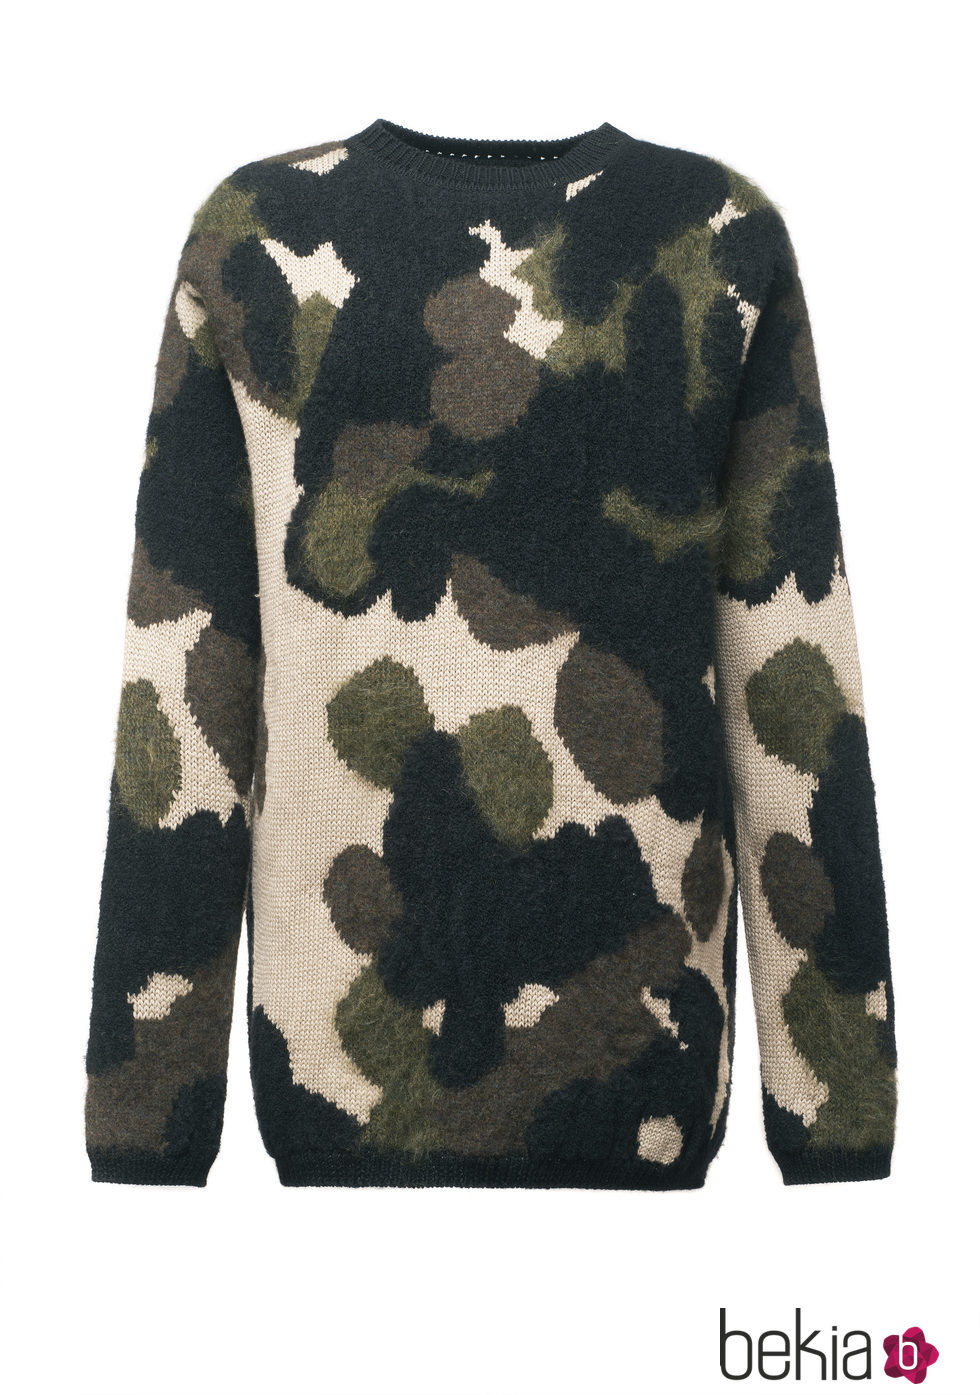 Jersey de estampado militar de la colección de Fay para el otoño/invierno 2015/2016